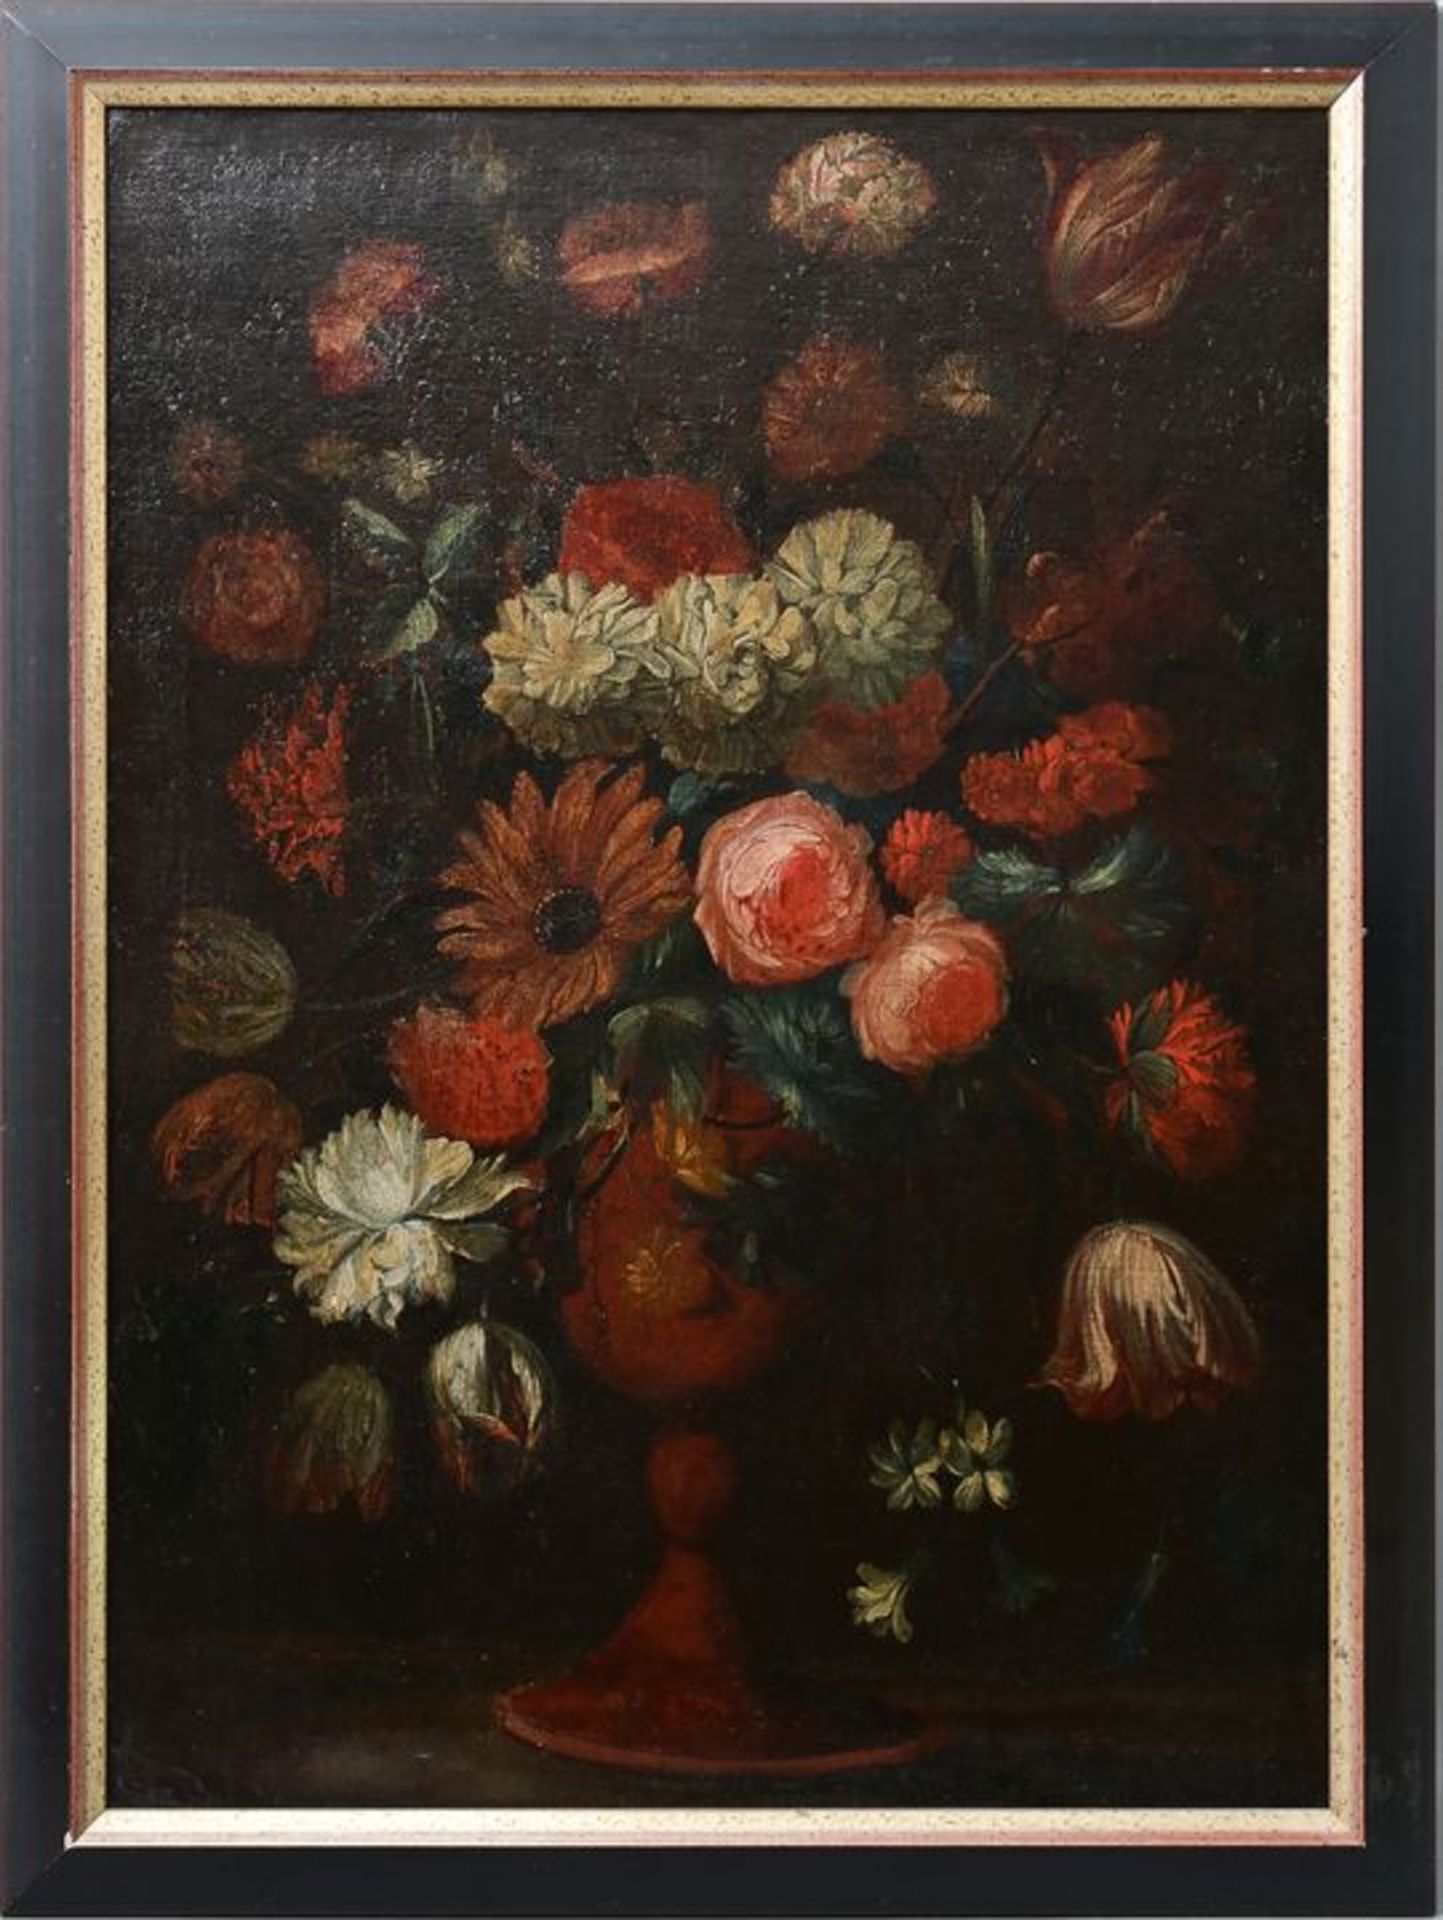 Blumenstillleben, 18. Jh. / Flower still life, 18th cent. - Image 3 of 3